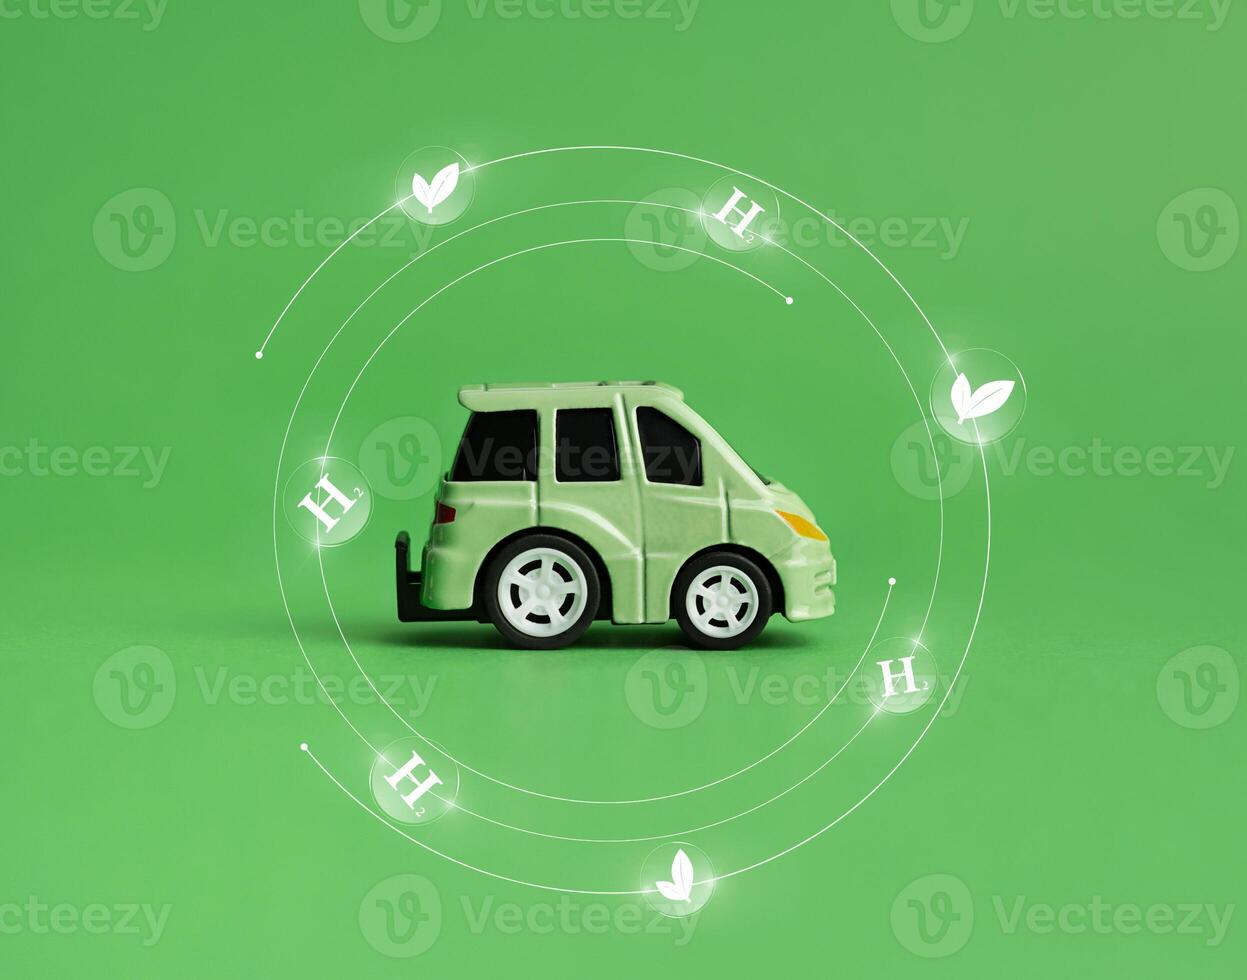 ekologi begrepp. grön bil och miljö- tecken på en grön bakgrund. miljö begrepp. foto